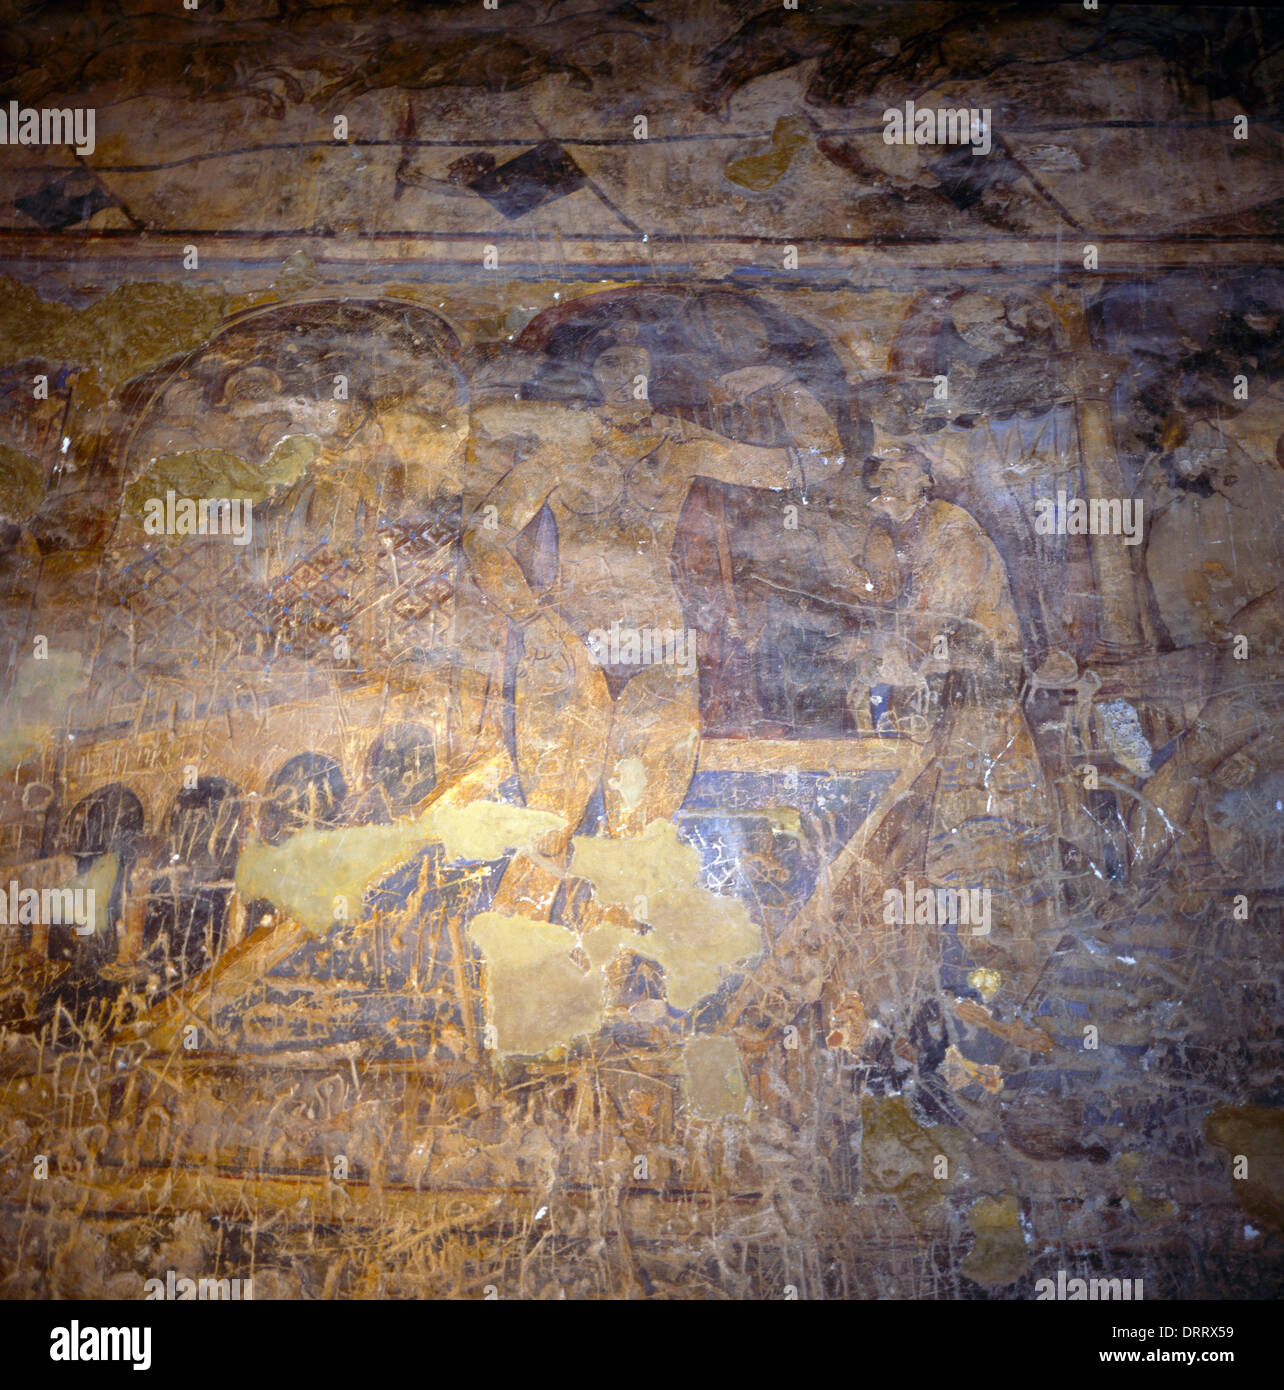 Qusayr Amra Jordanie bains omeyyades construit dans le désert par le calife Walid I 700-715 Fresque de femme sur le mur de l'allée latérale Banque D'Images